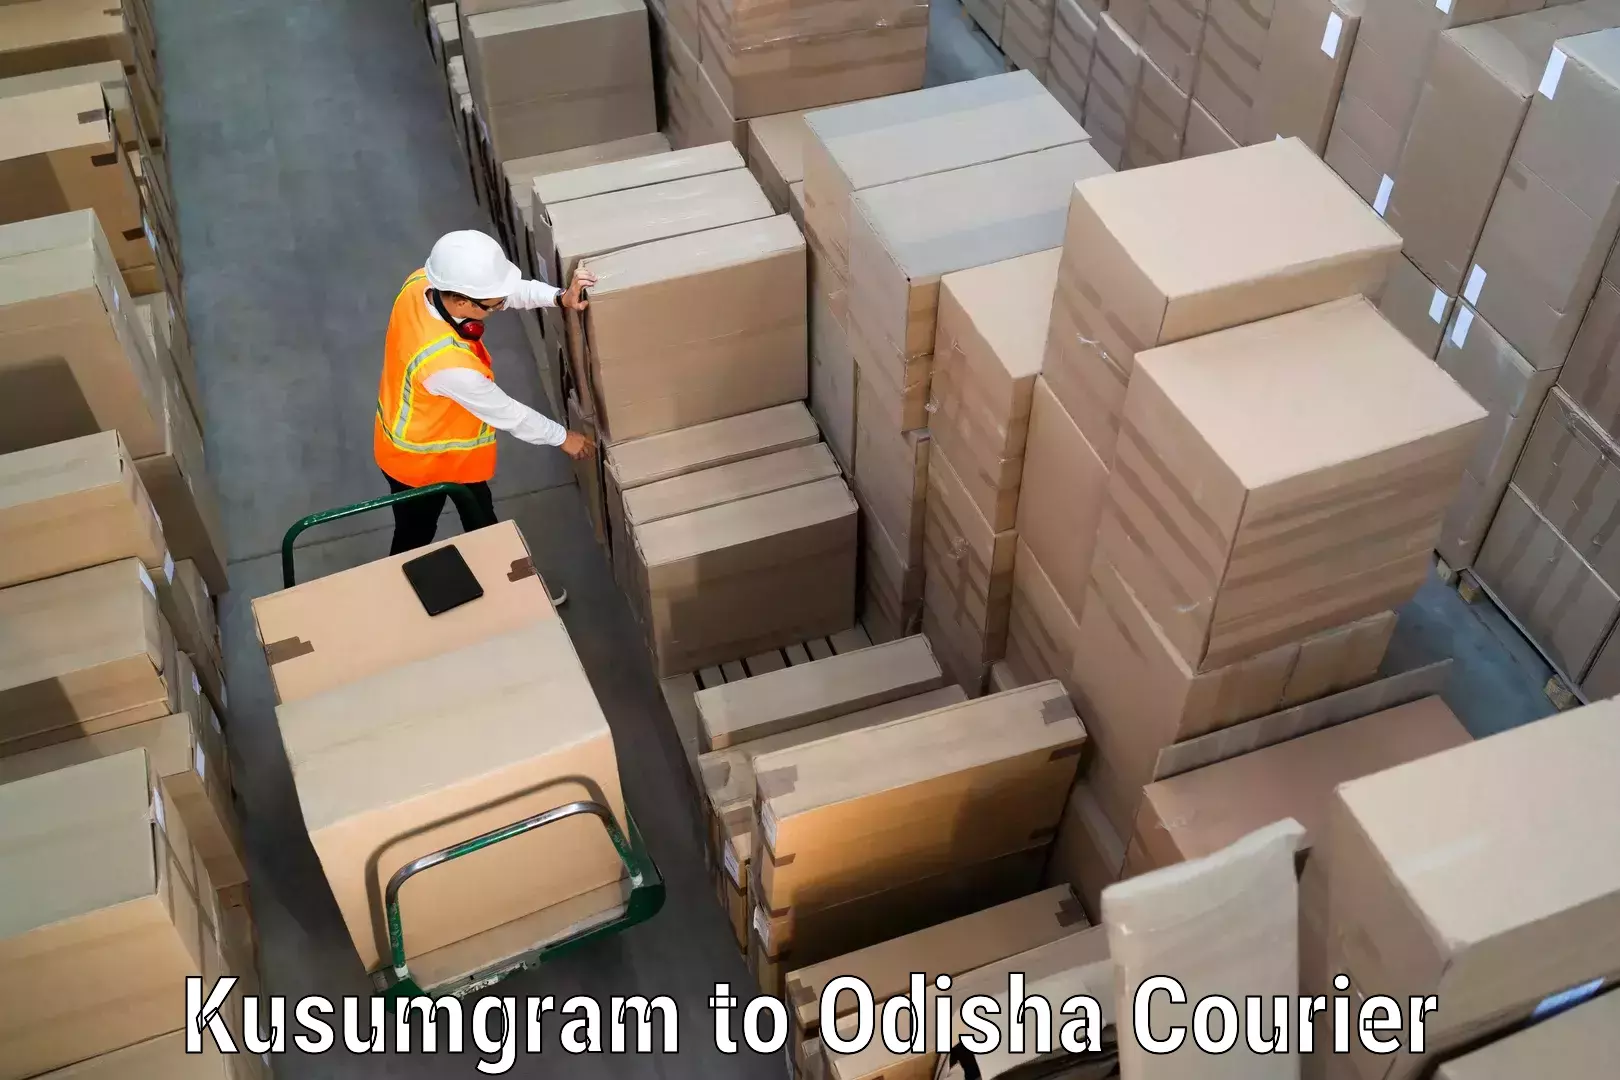 User-friendly courier app Kusumgram to Morada